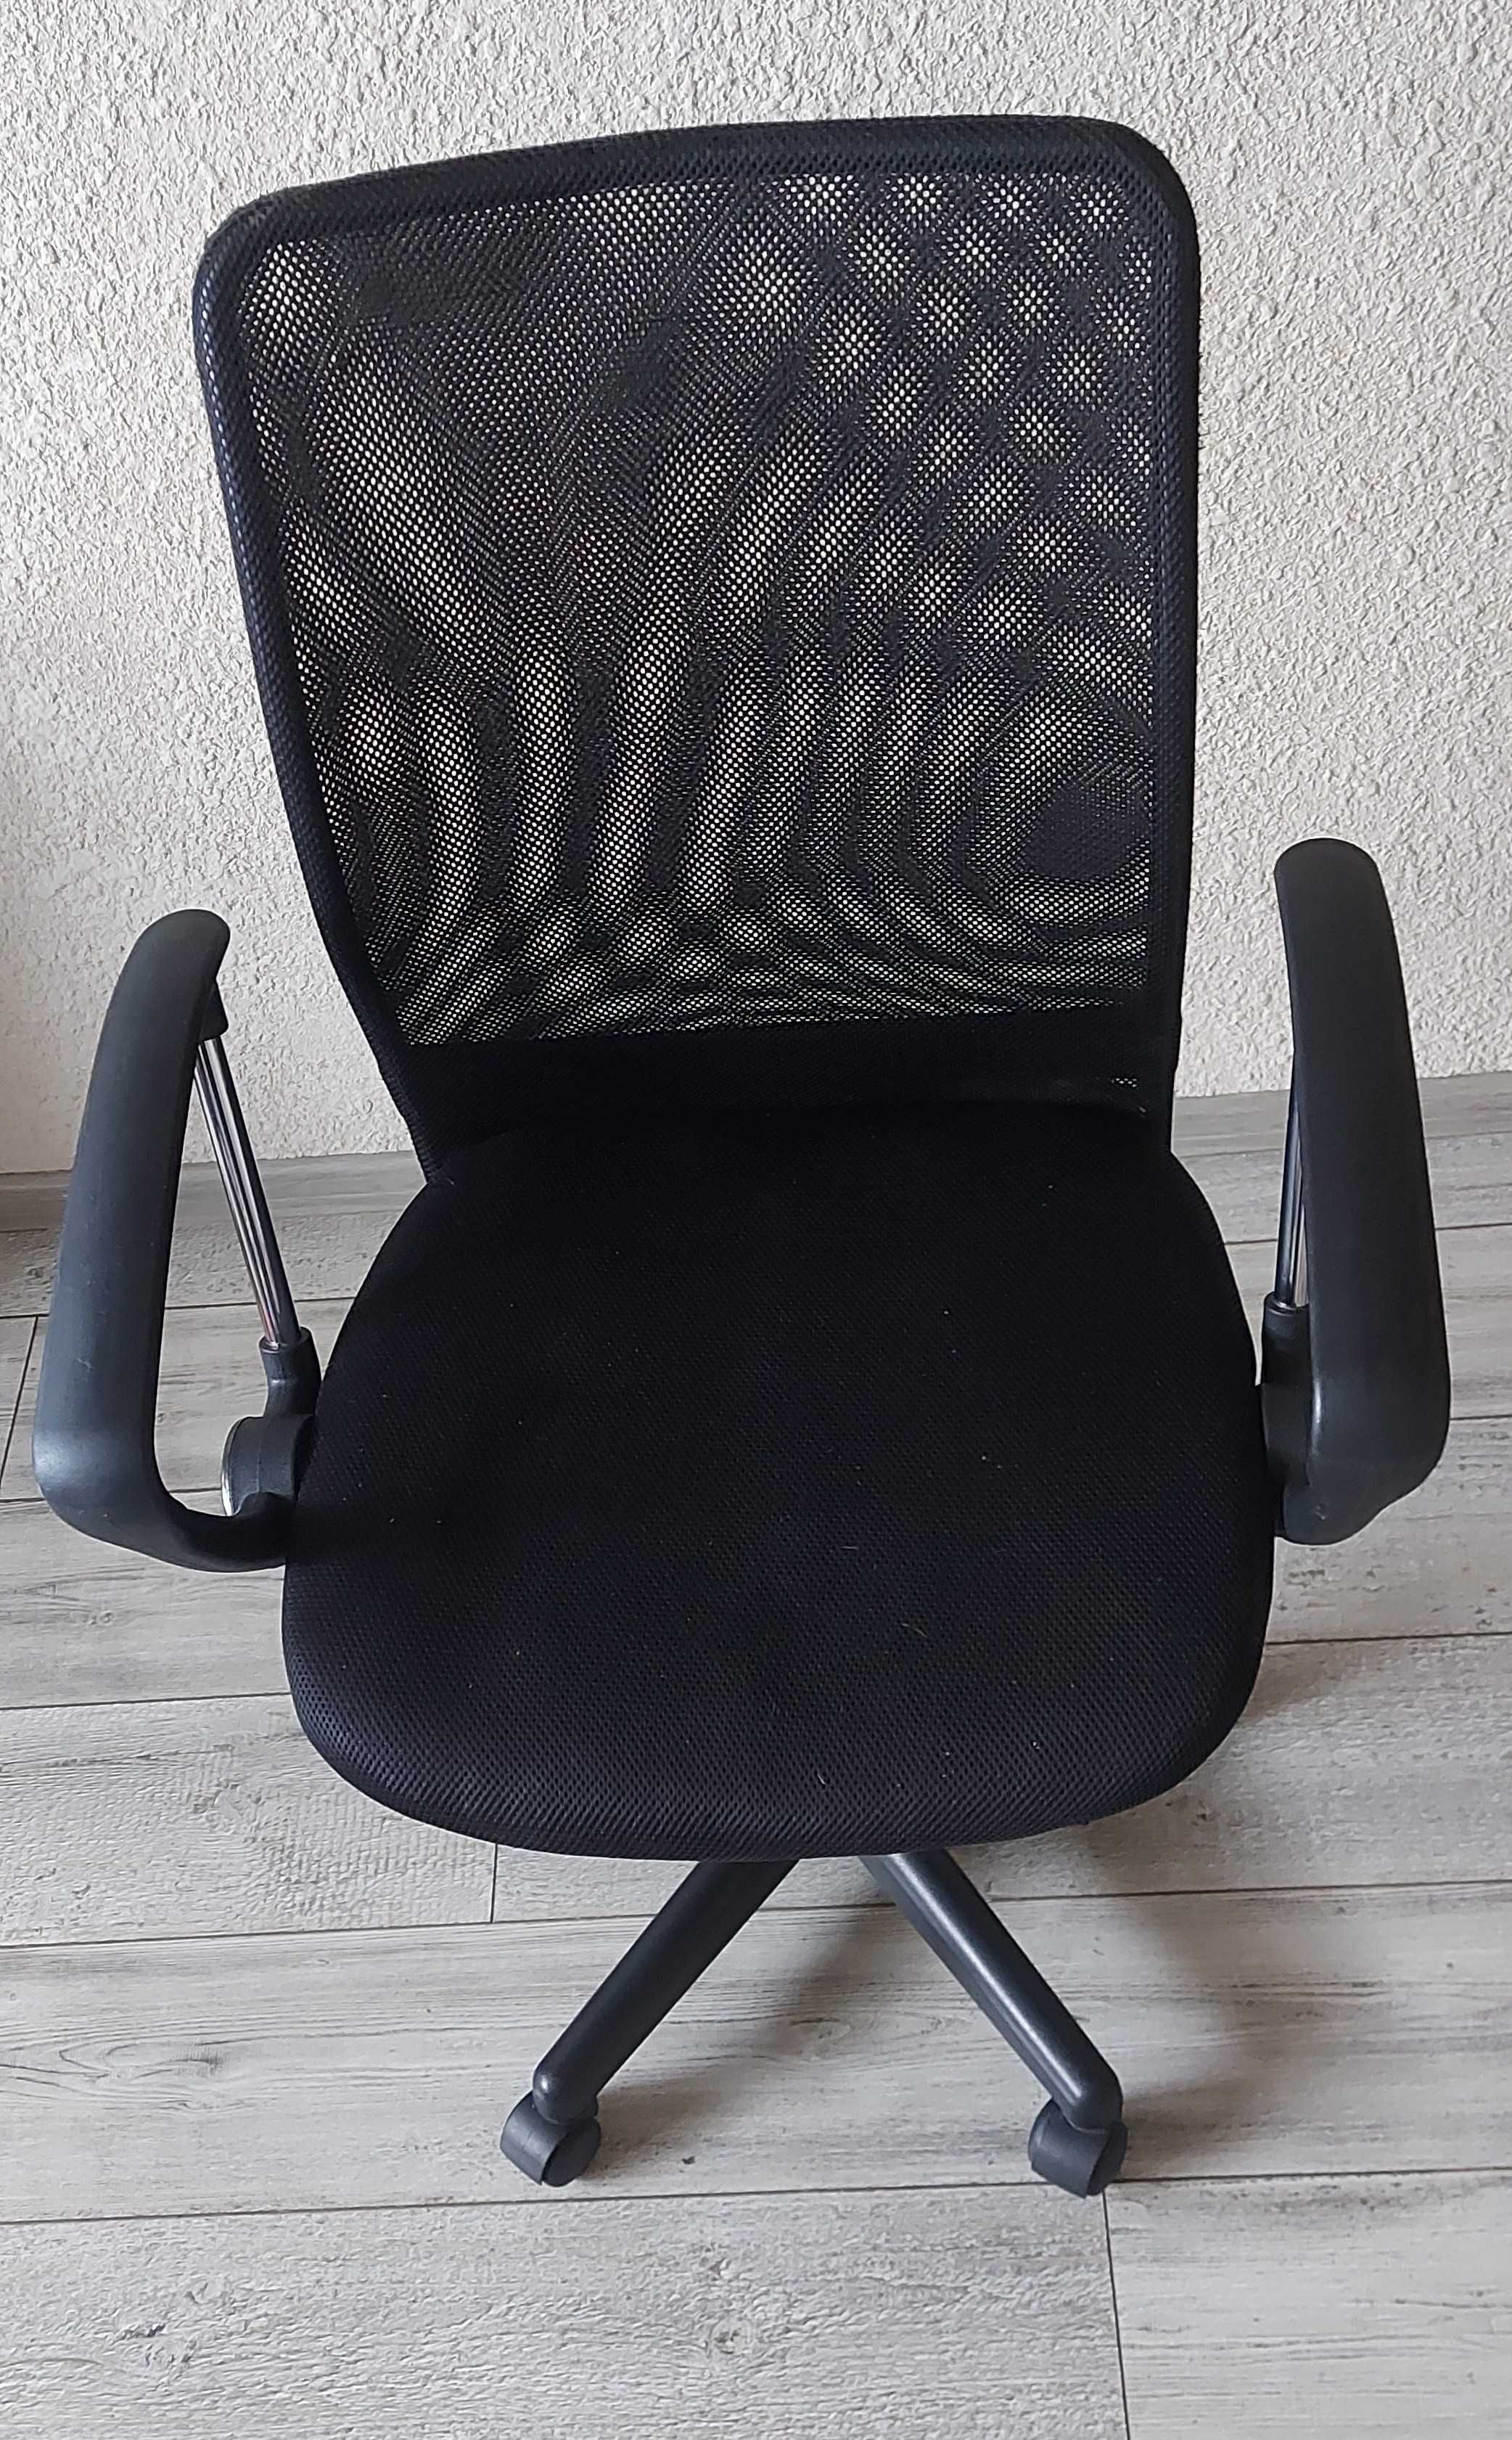 Krzesło czarne na kółkach obracające się